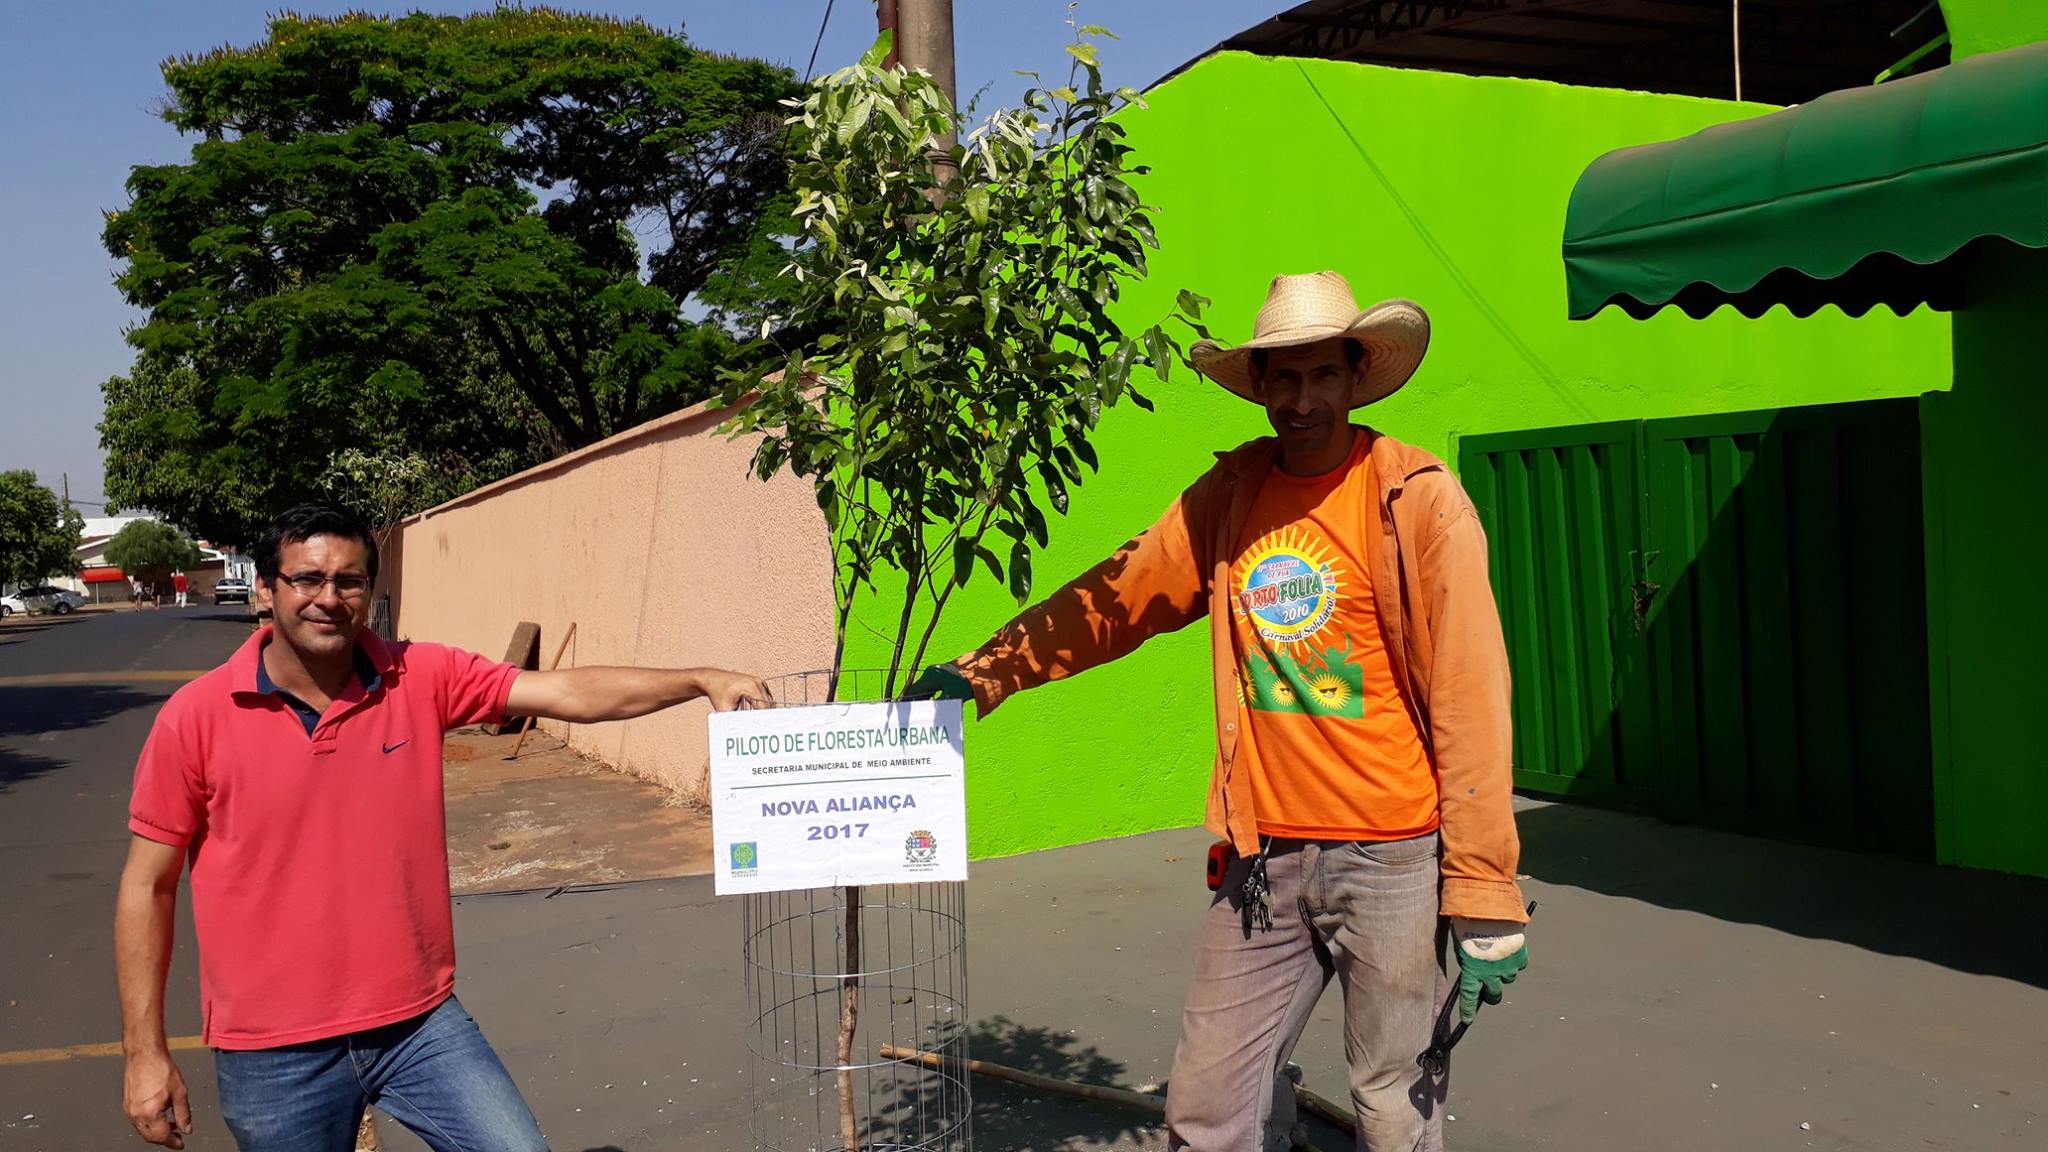 Projeto Piloto de Floresta Urbana melhora a arborização na cidade - Prefeitura Municipal de Nova Aliança-SP